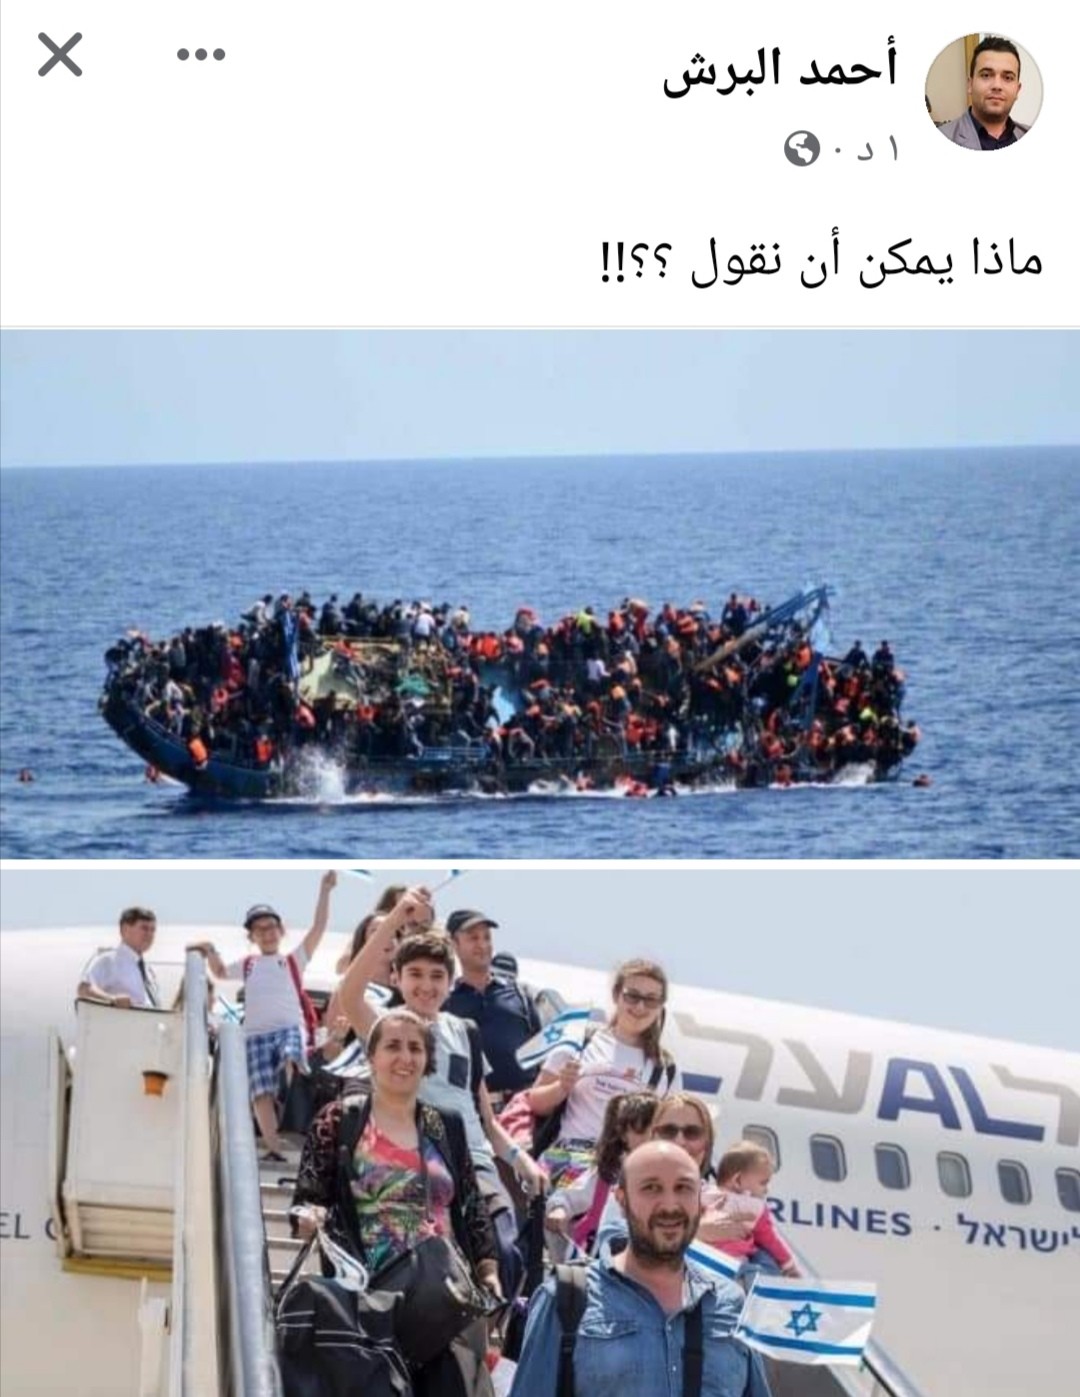 تقرير: شباب غزّة يهربون من واقع مأساوي لواقع مجهول في أوروبا المنهكة!!